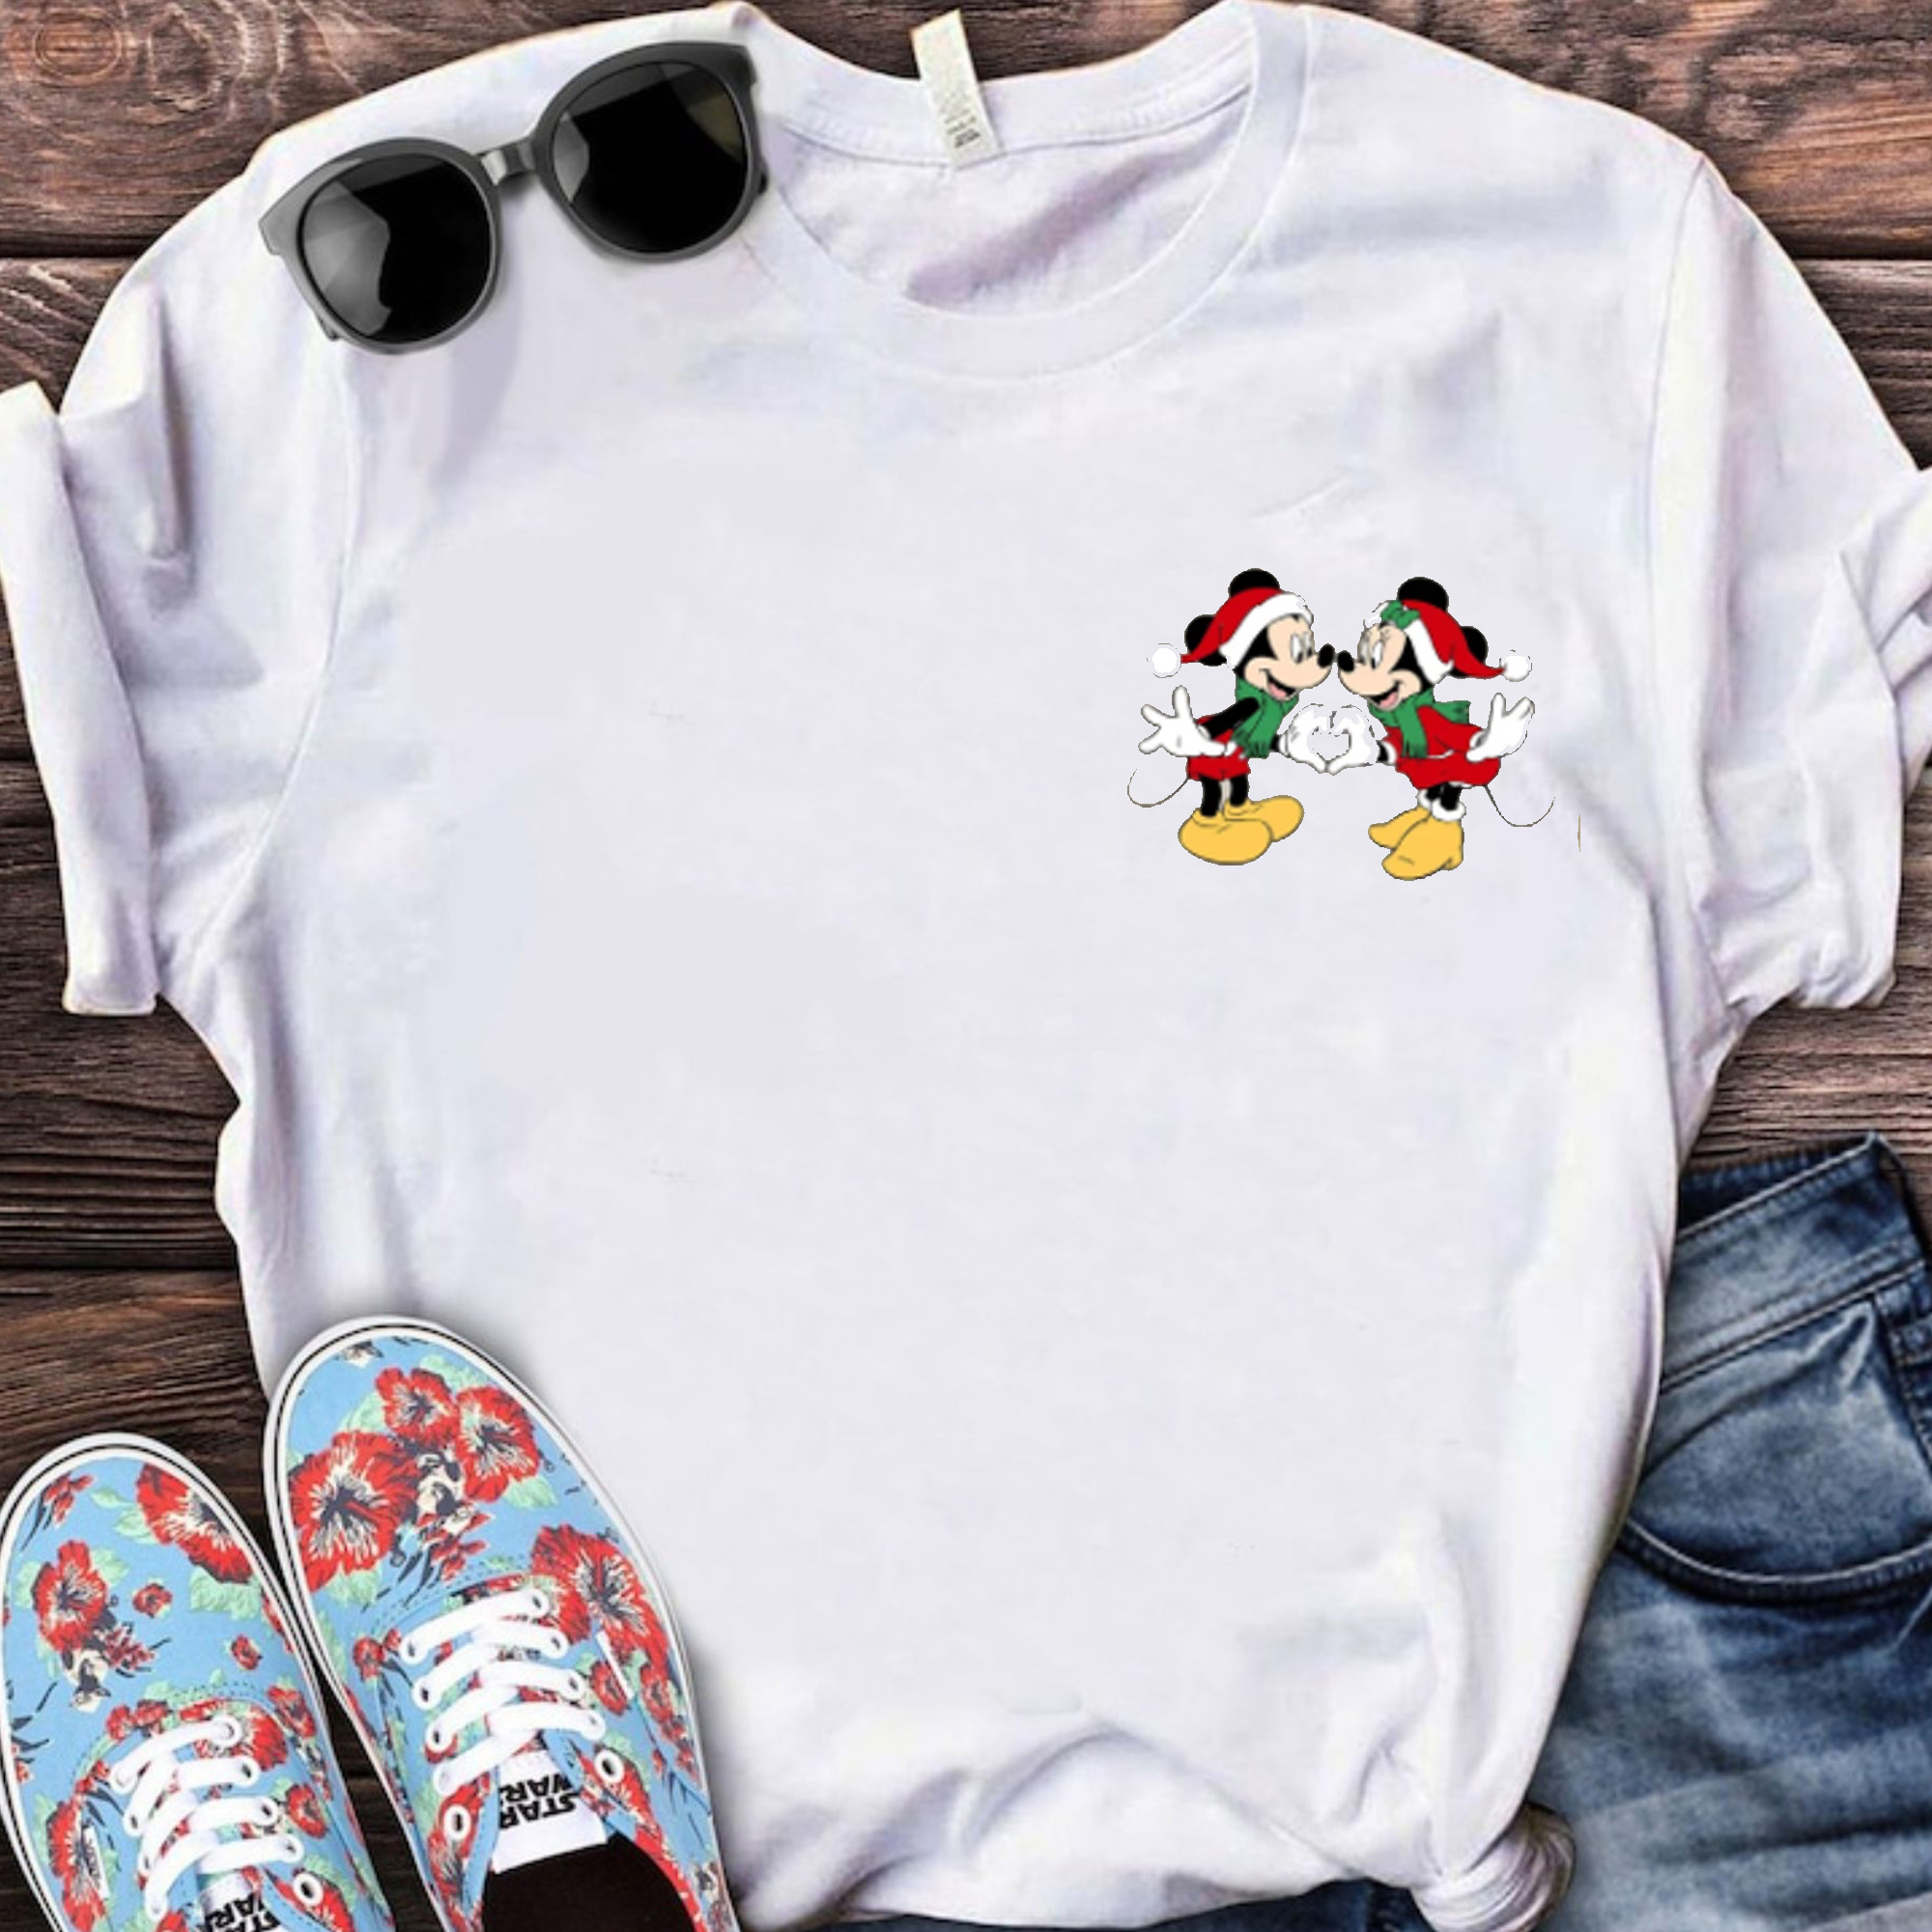 https://eagleazshop.com/wp-content/uploads/2021/11/Mickey-And-Minnie-Christmas-Crewneck-Shirt_-Disney-Couple-Shirt_-Disney-Shirt_-Christmas-Shirt_-Christmas-Gifts_86615789-1.jpg